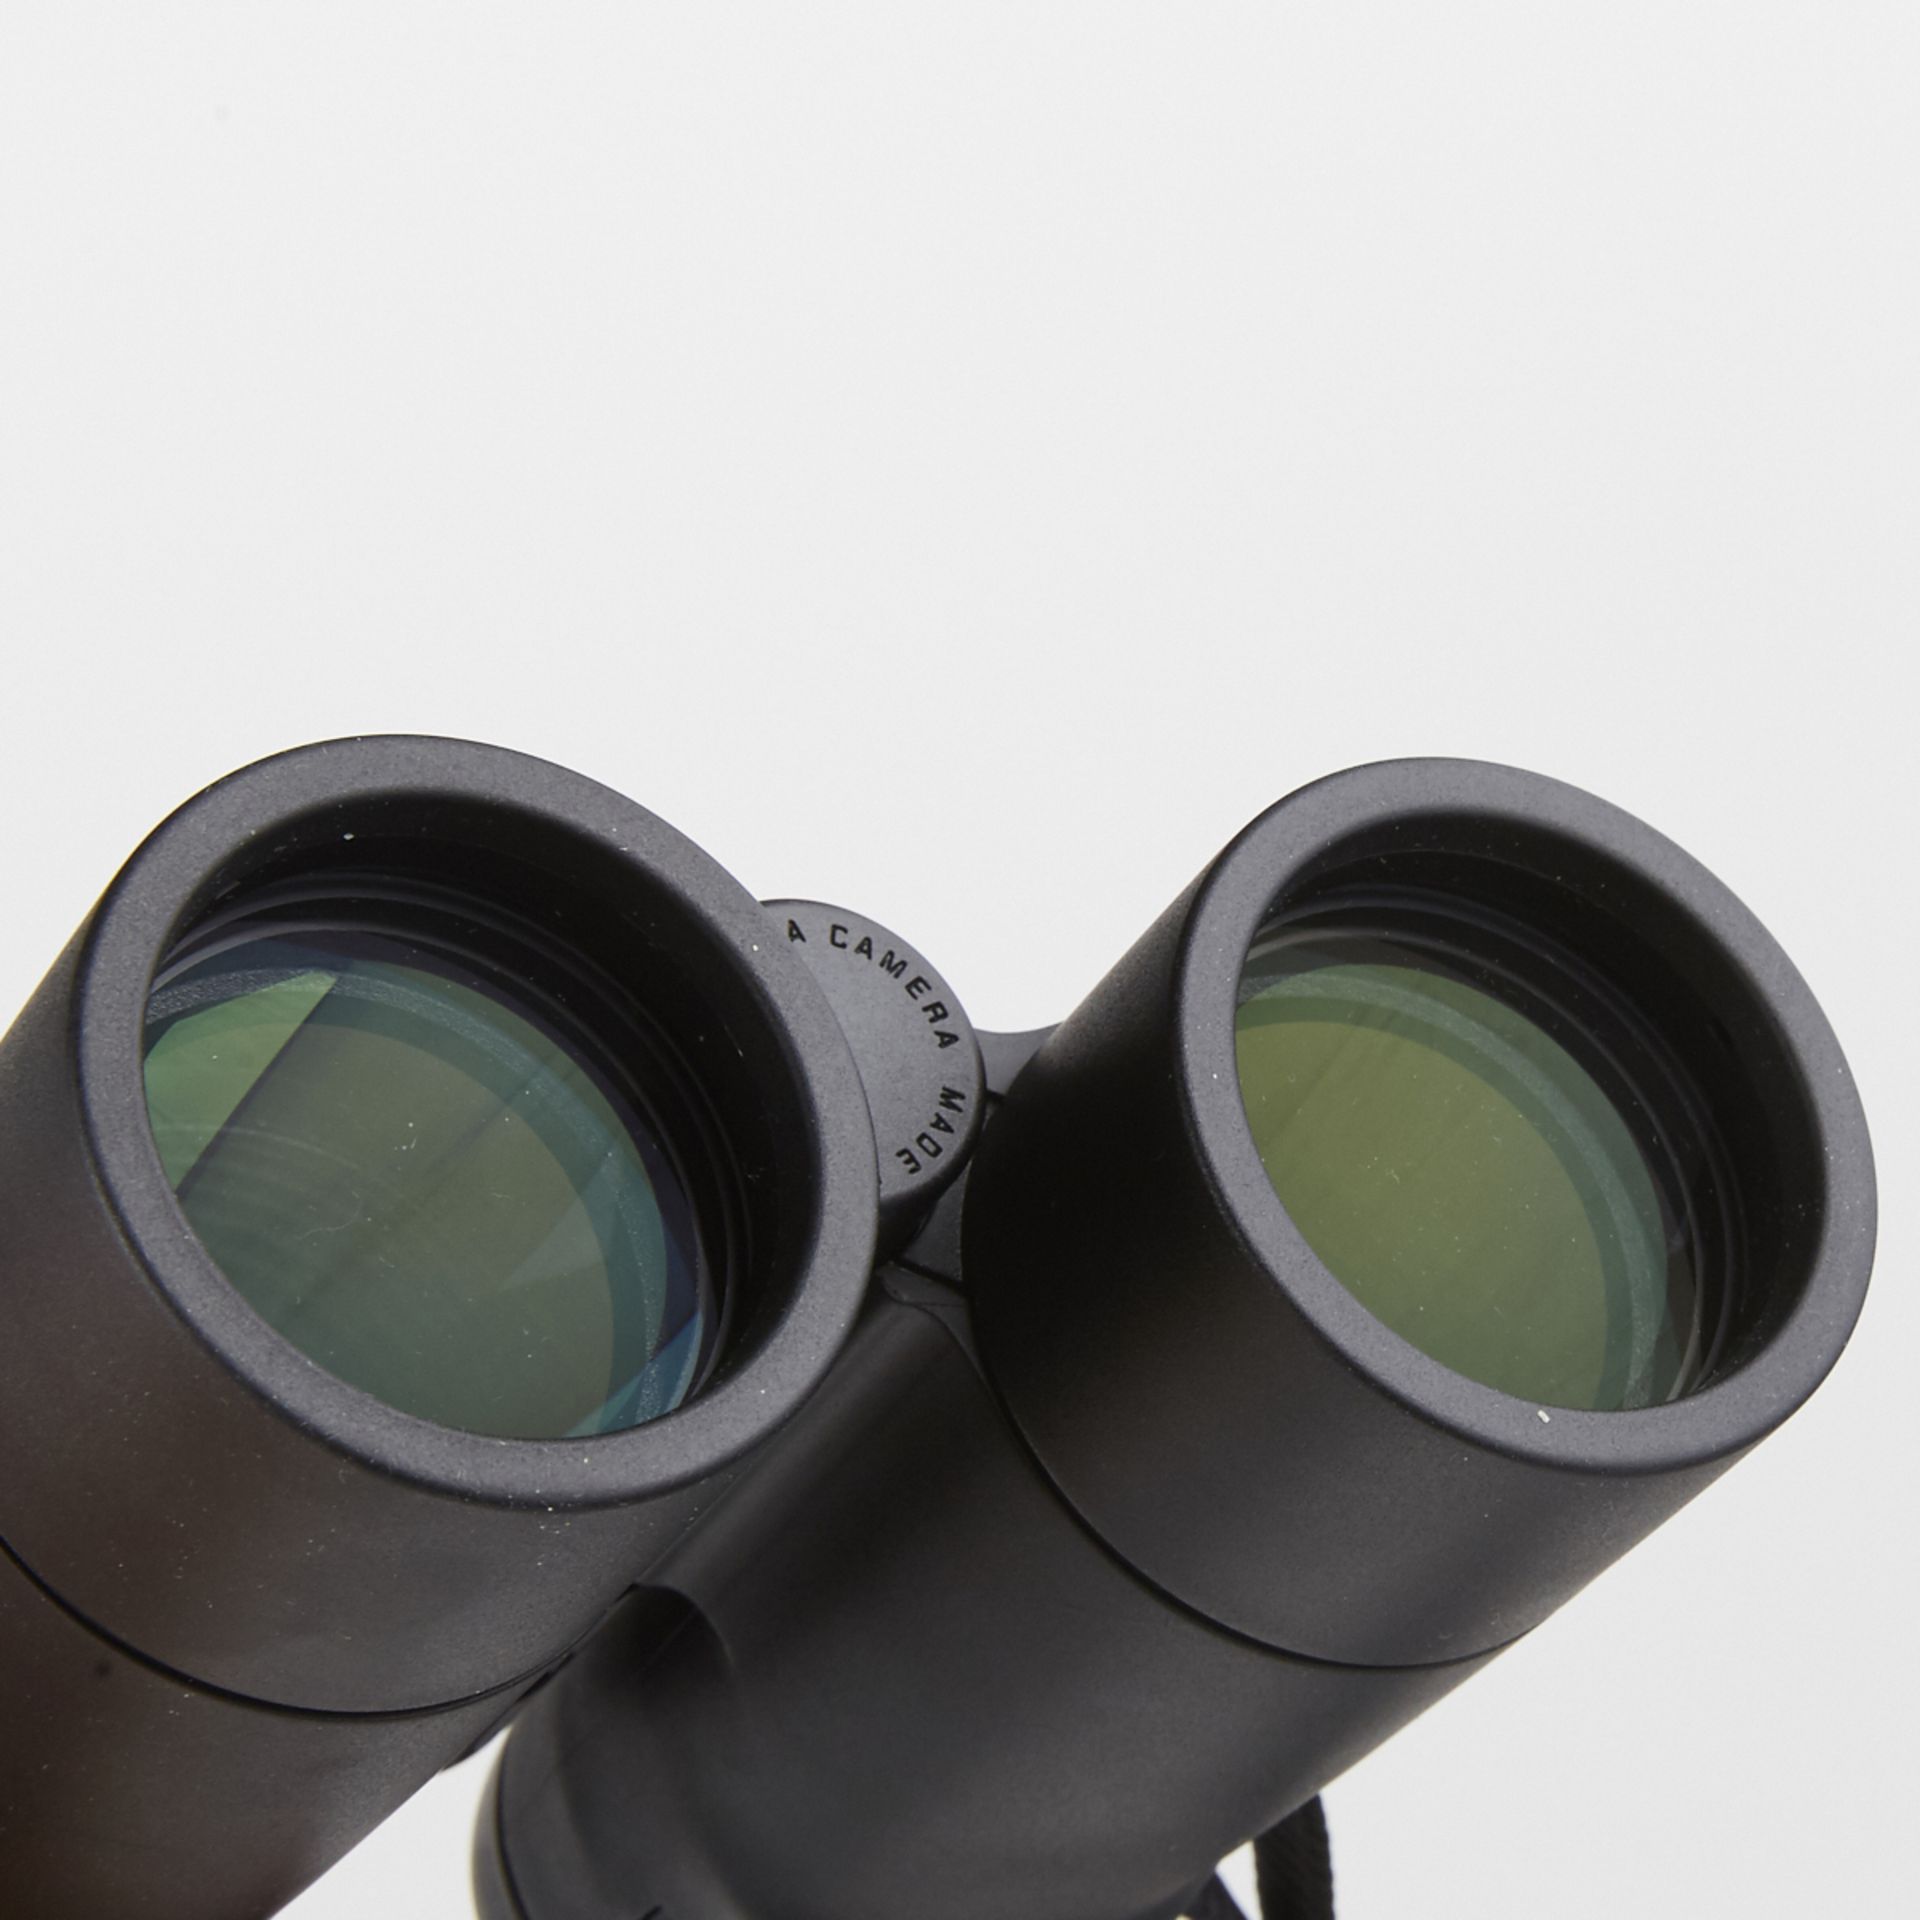 Leica Ultravid 8x42 HD Binoculars - New In Box - Image 6 of 10